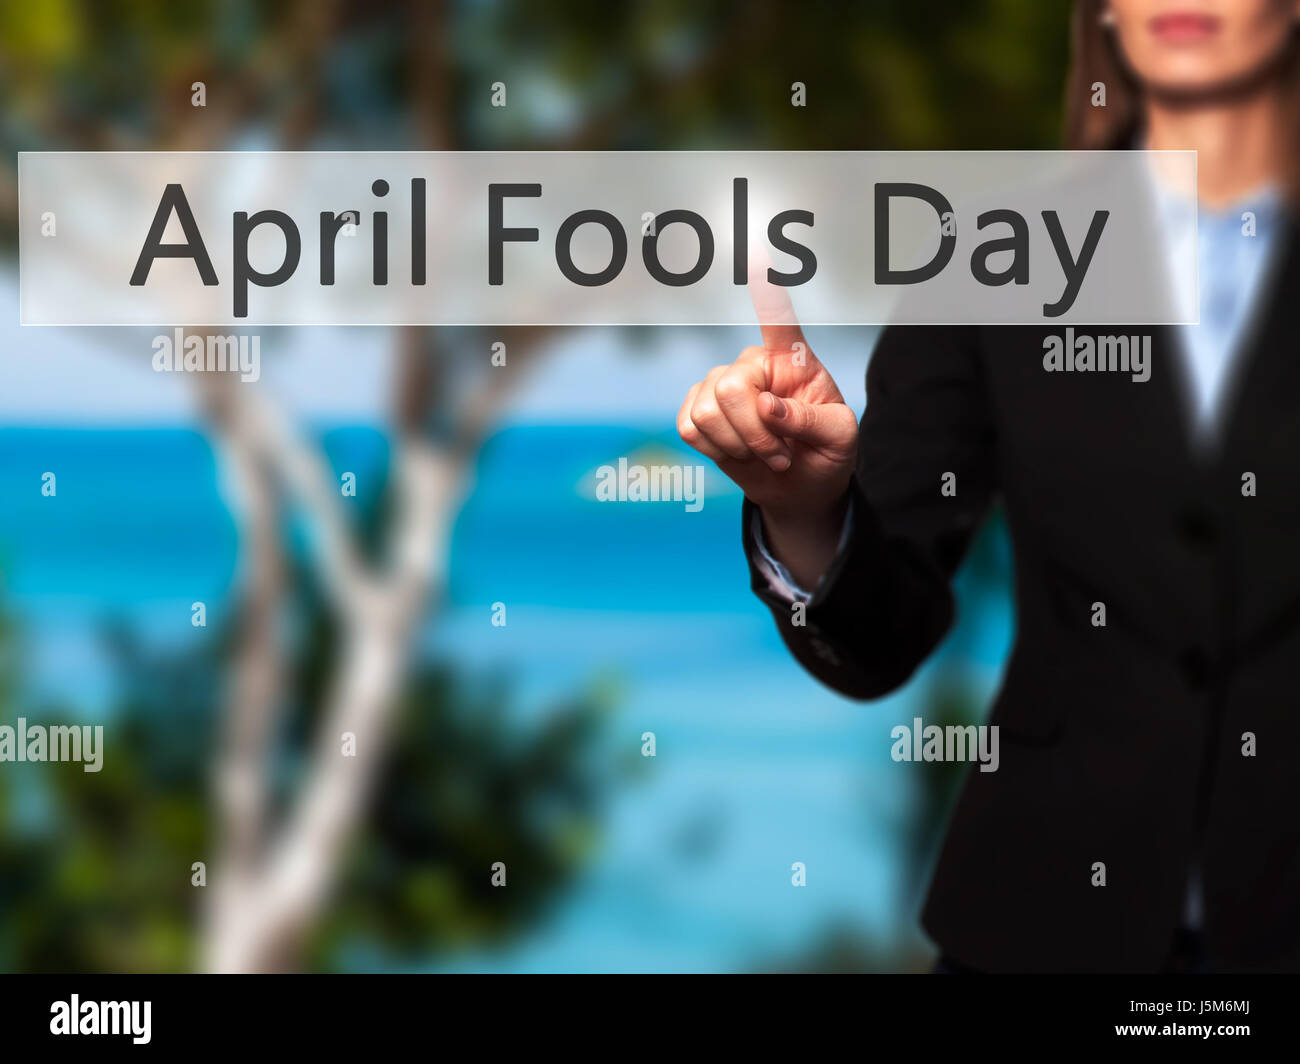 April Fools Day - Lado hembra aislado de tocar o apuntando al botón. Concepto de negocio y la tecnología del futuro. Stock Photo Foto de stock